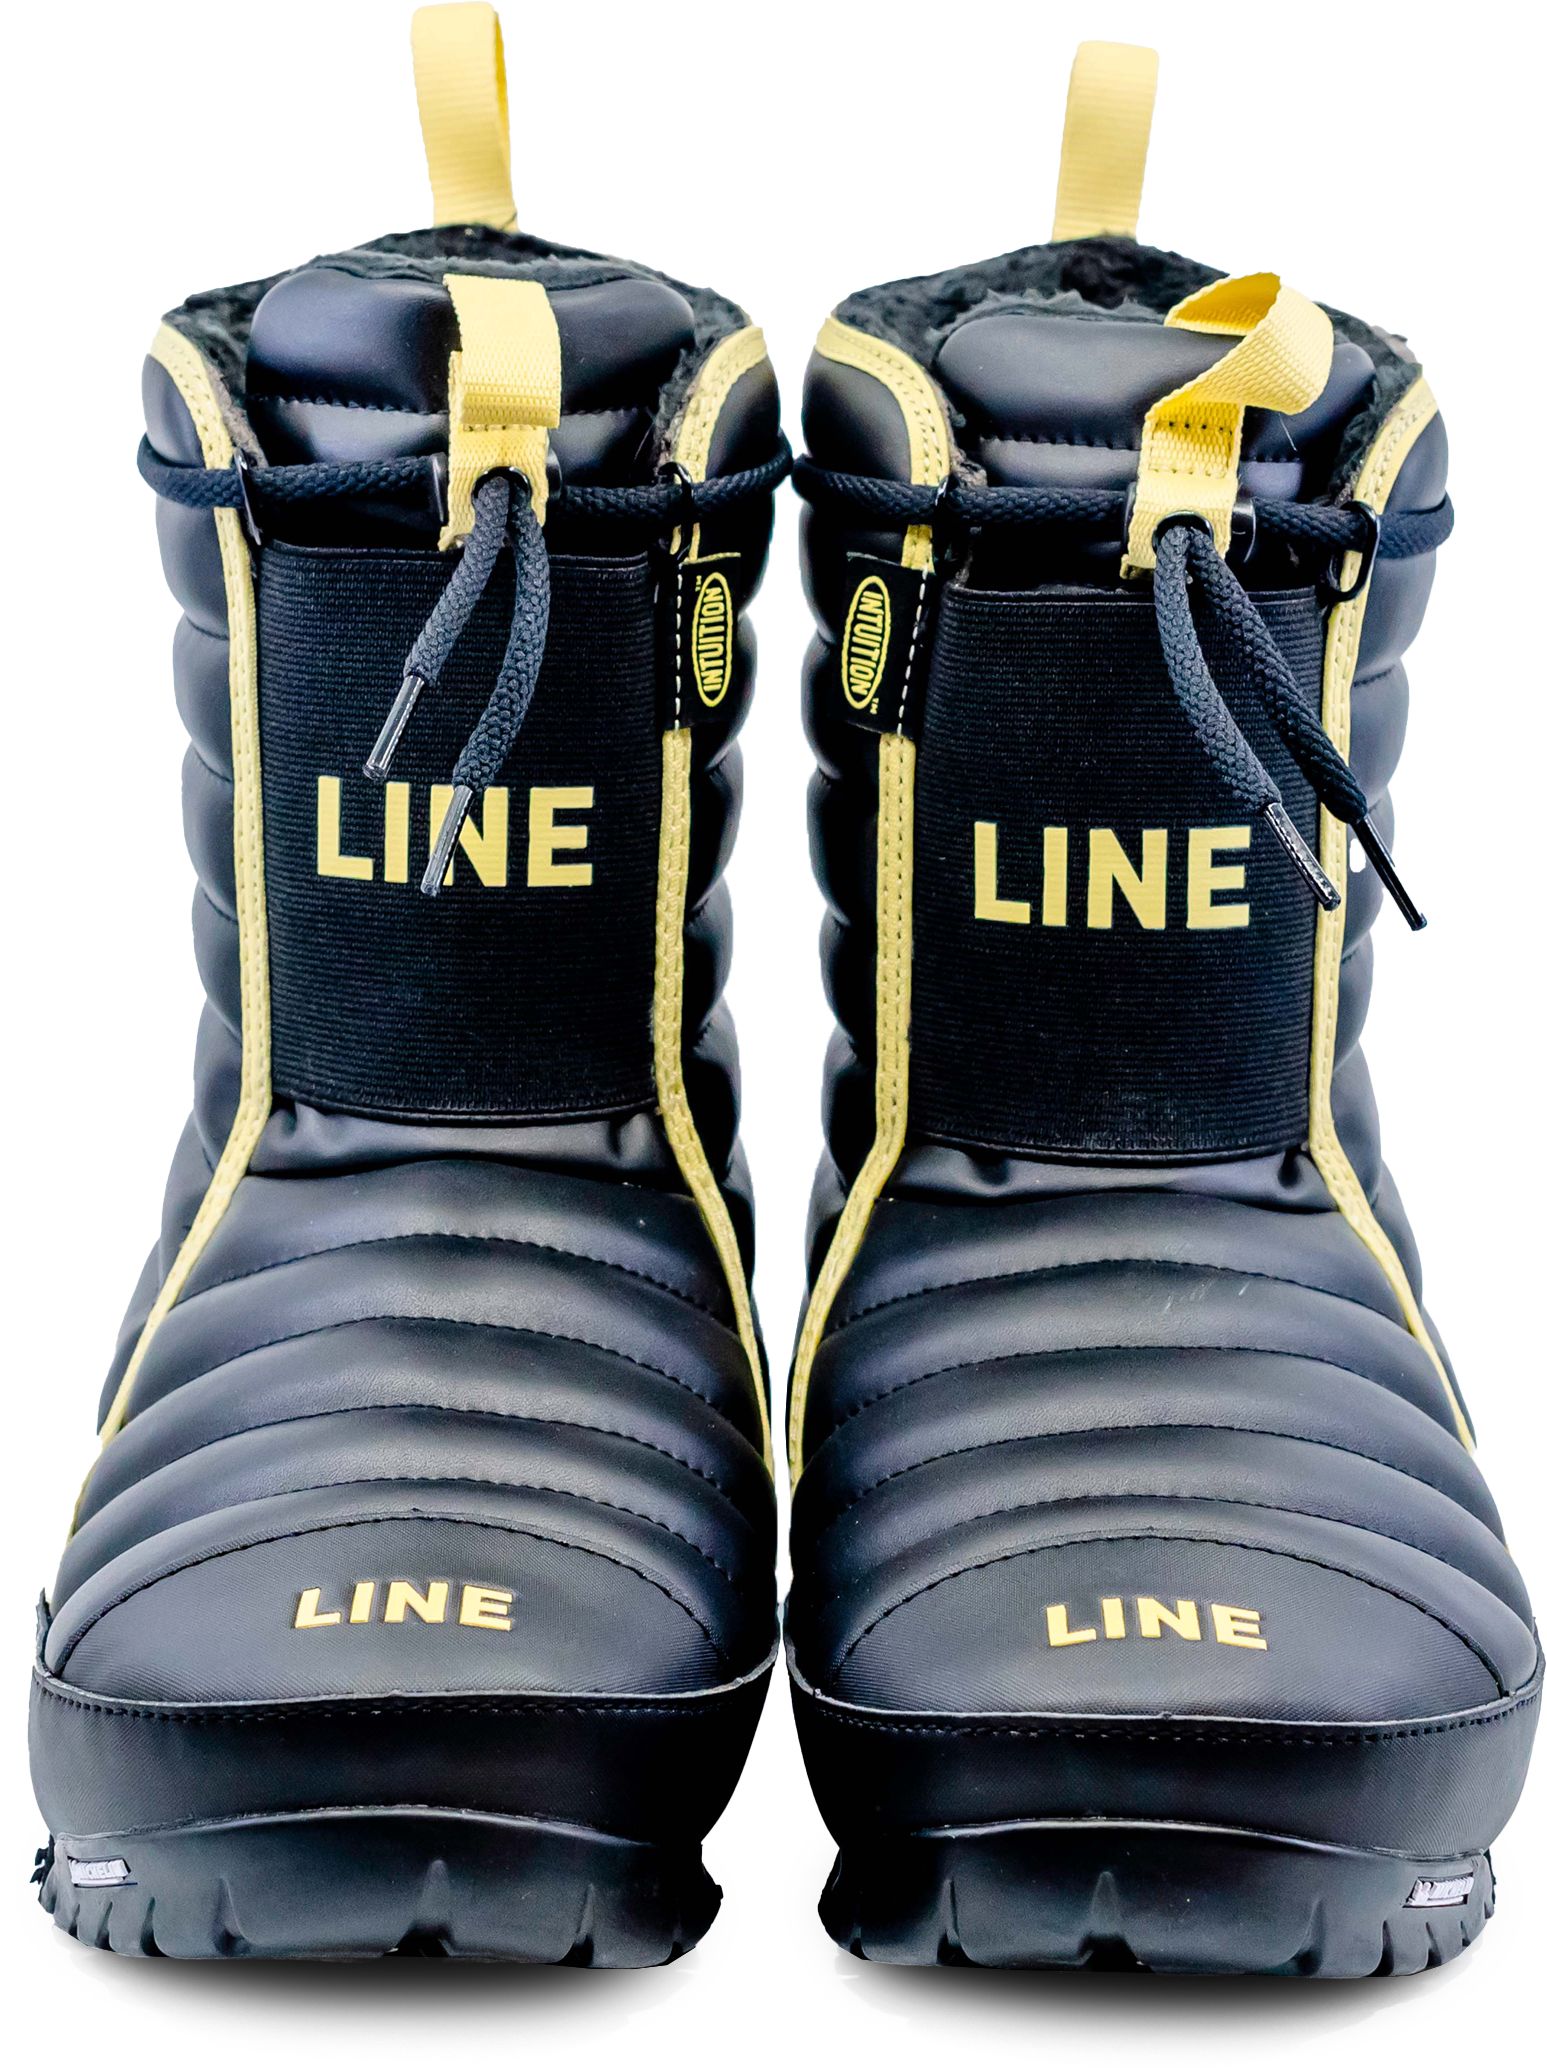 LINE, LINE BOOTIE 2.0